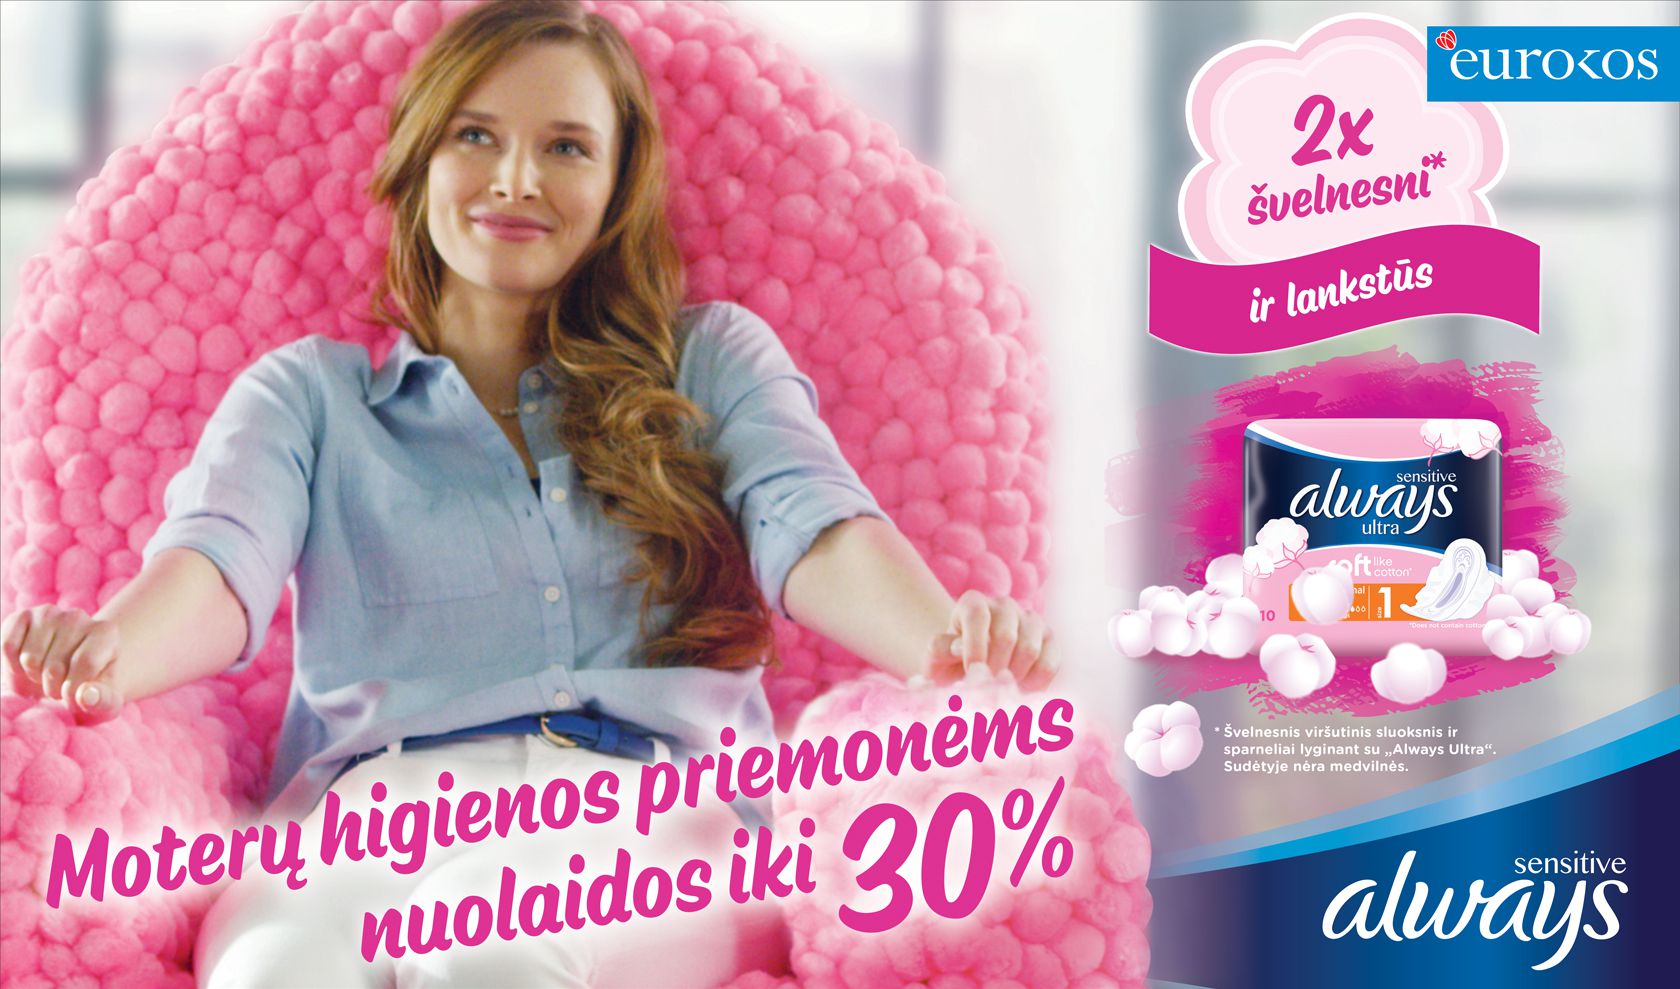 Moterų higienos priemonėms nuolaidos iki 30%!